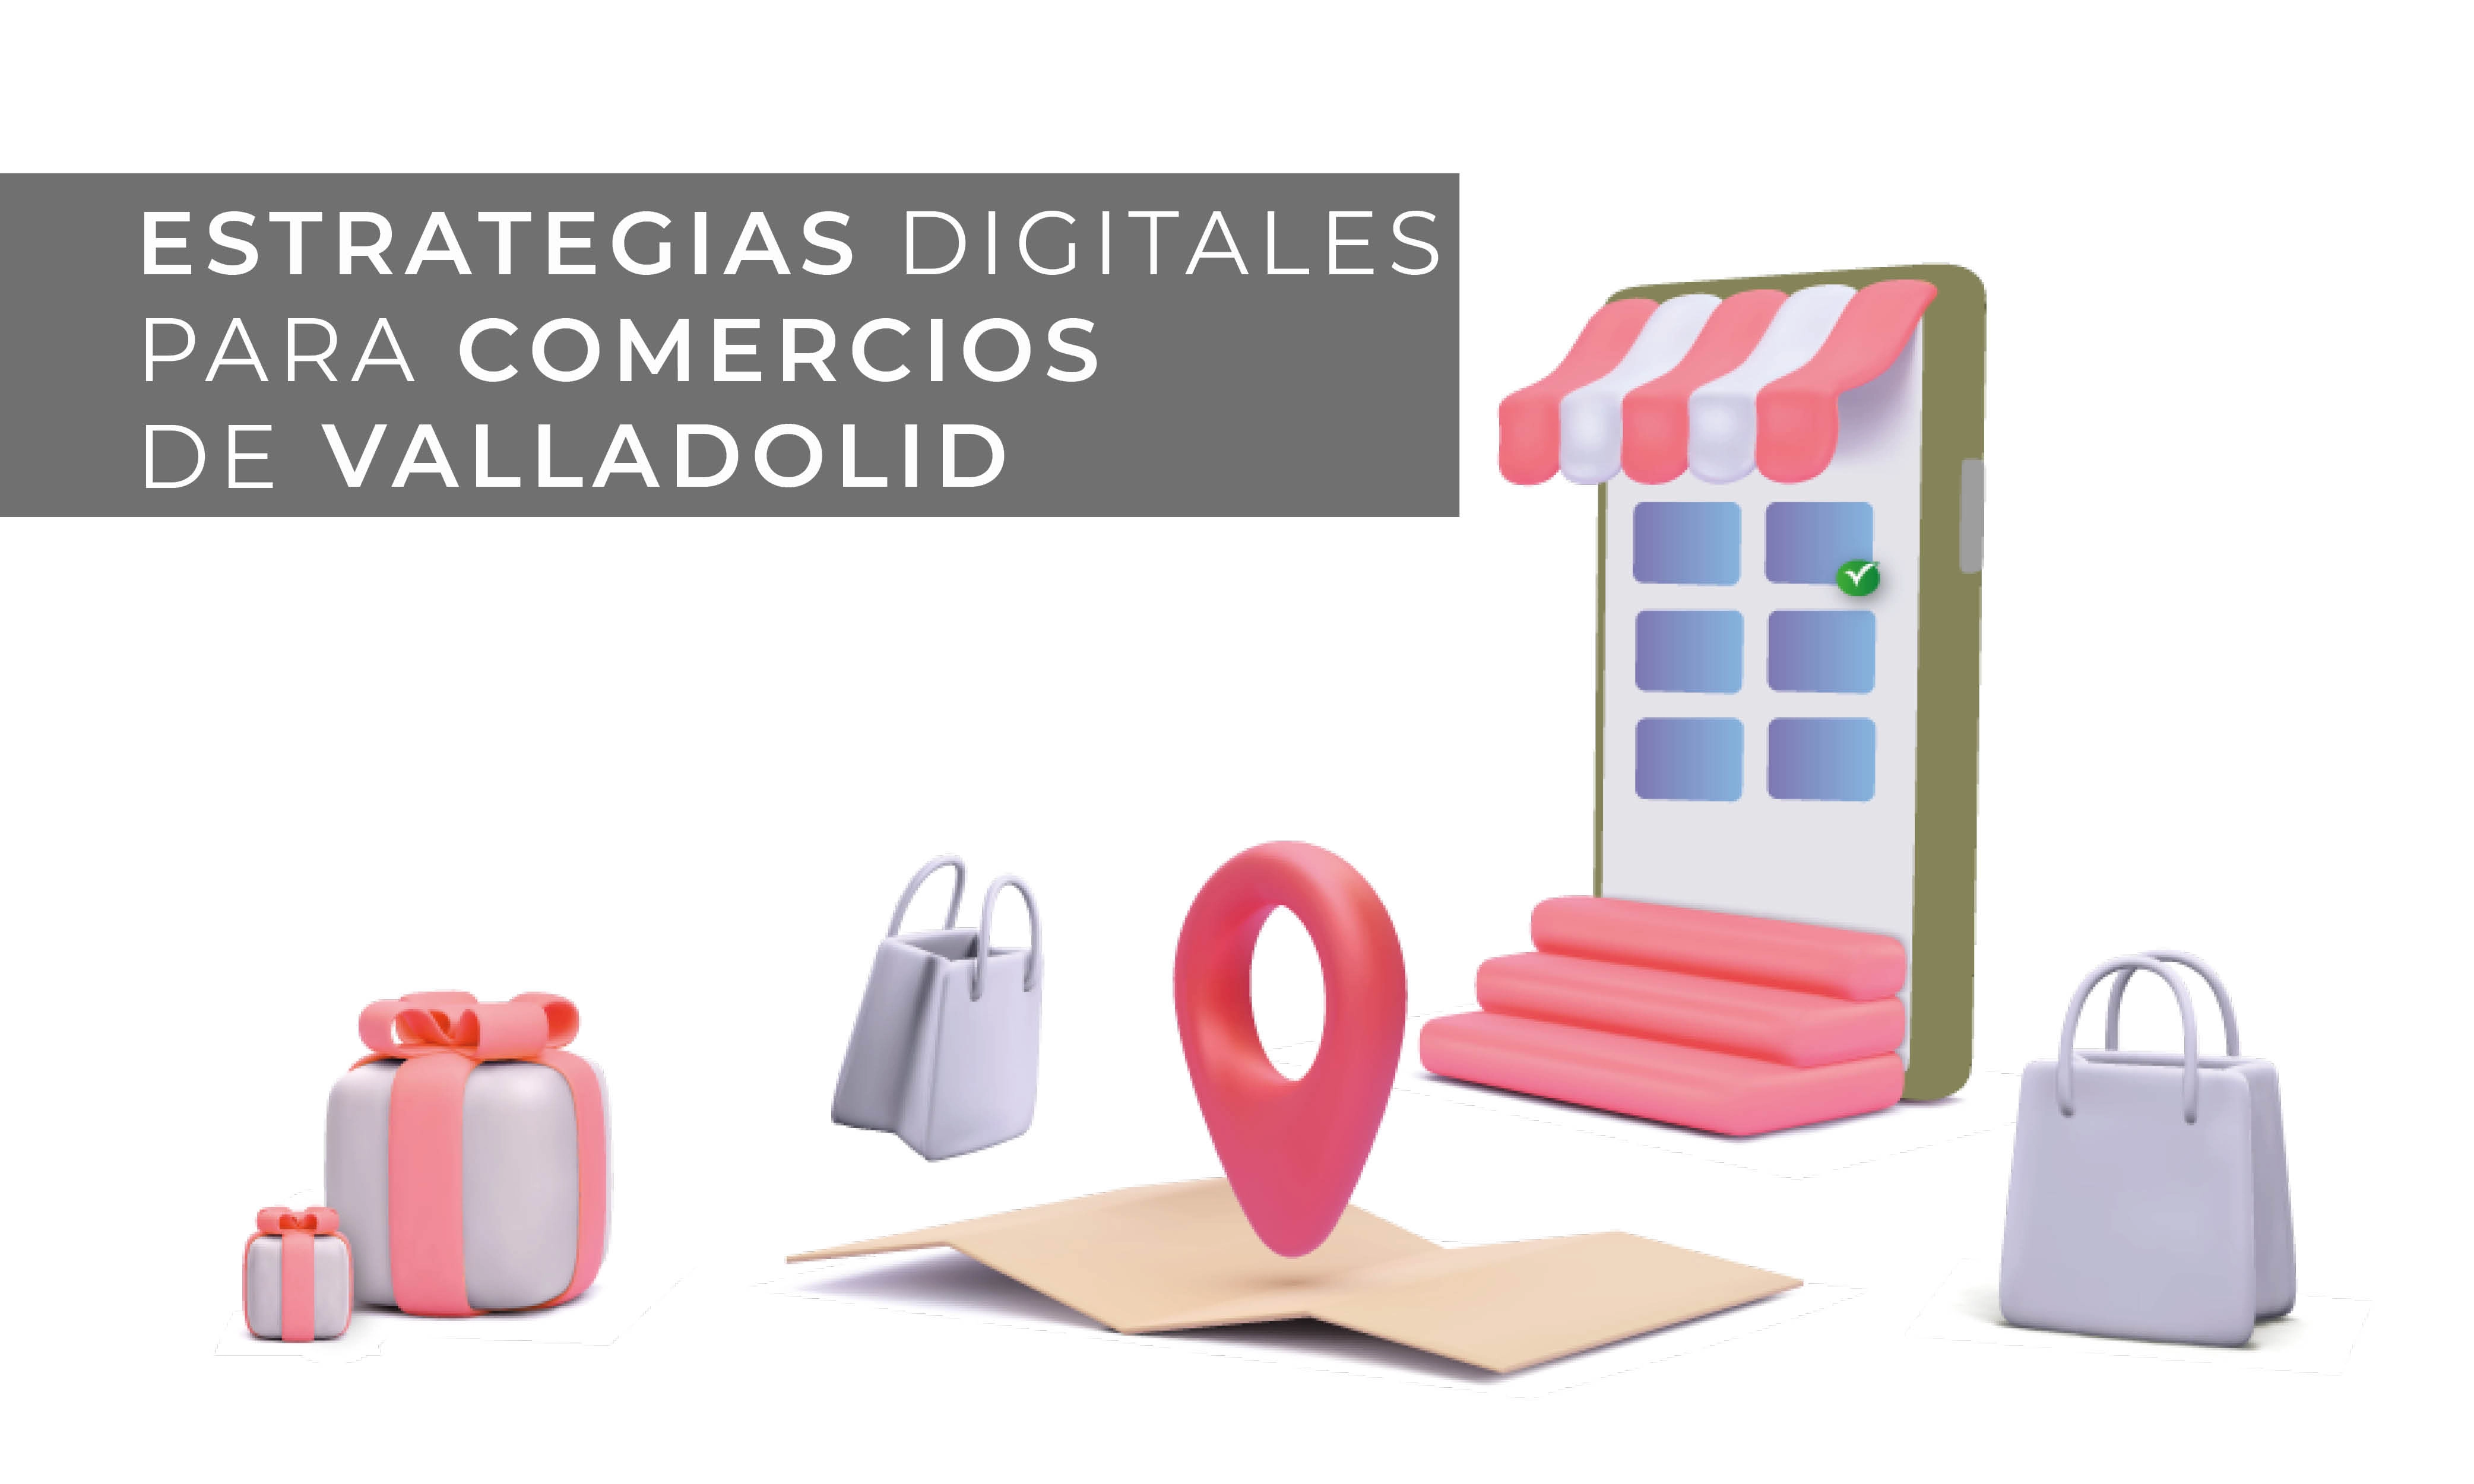 Estrategias digitales para emprendedores y pequeñas o medianas empresas Valladolid